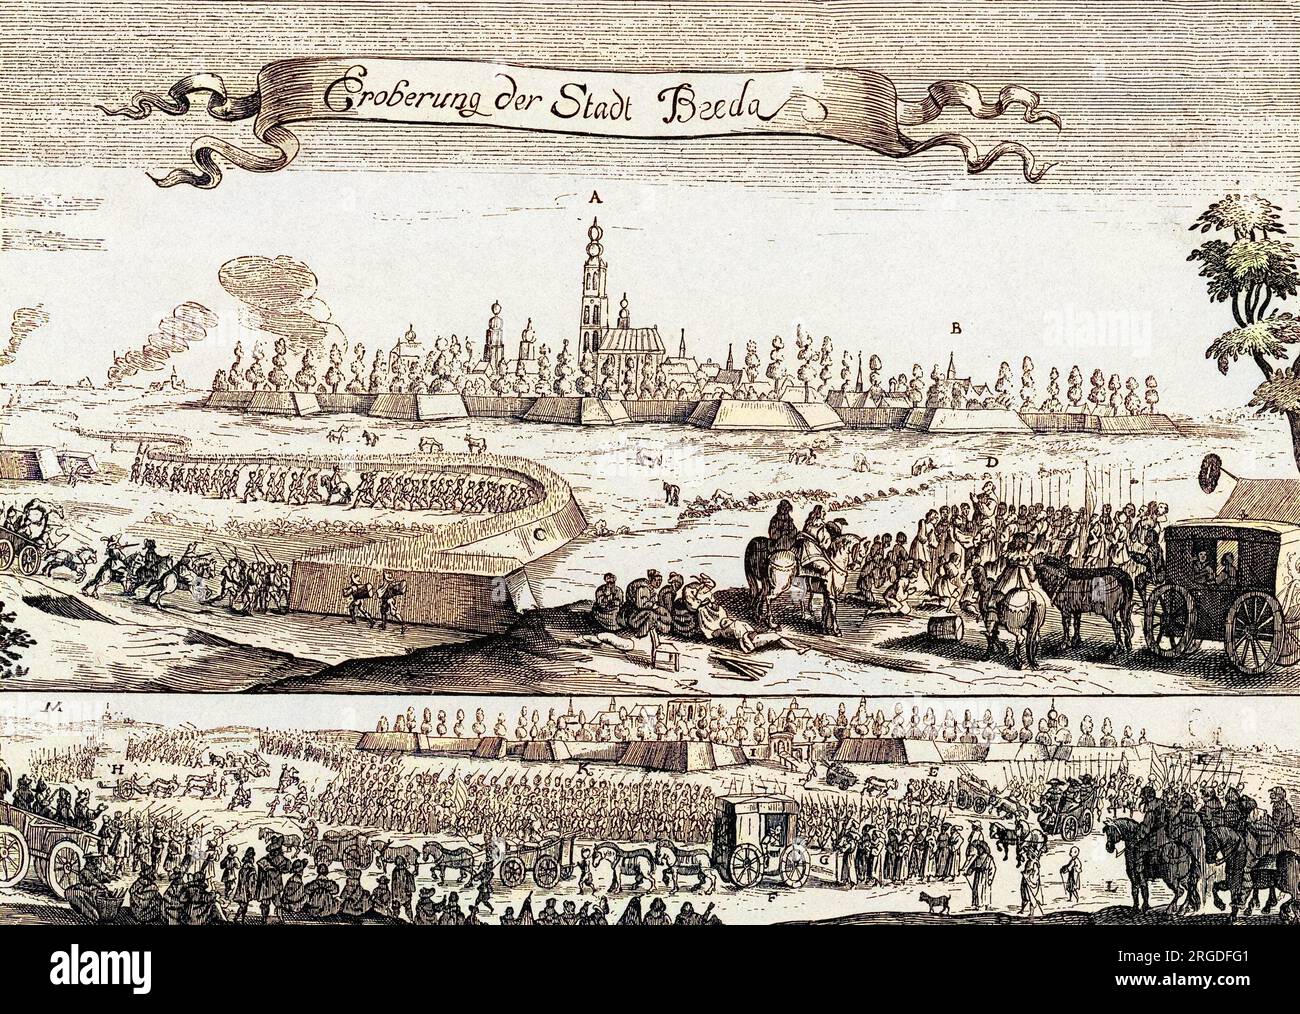 Breda viene continuamente presa e riconquistata dagli spagnoli e dagli olandesi a loro volta: Gli spagnoli lo presero nel 1625, ma ora viene riconquistata da Frederik Henrik dopo un lungo assedio. Foto Stock